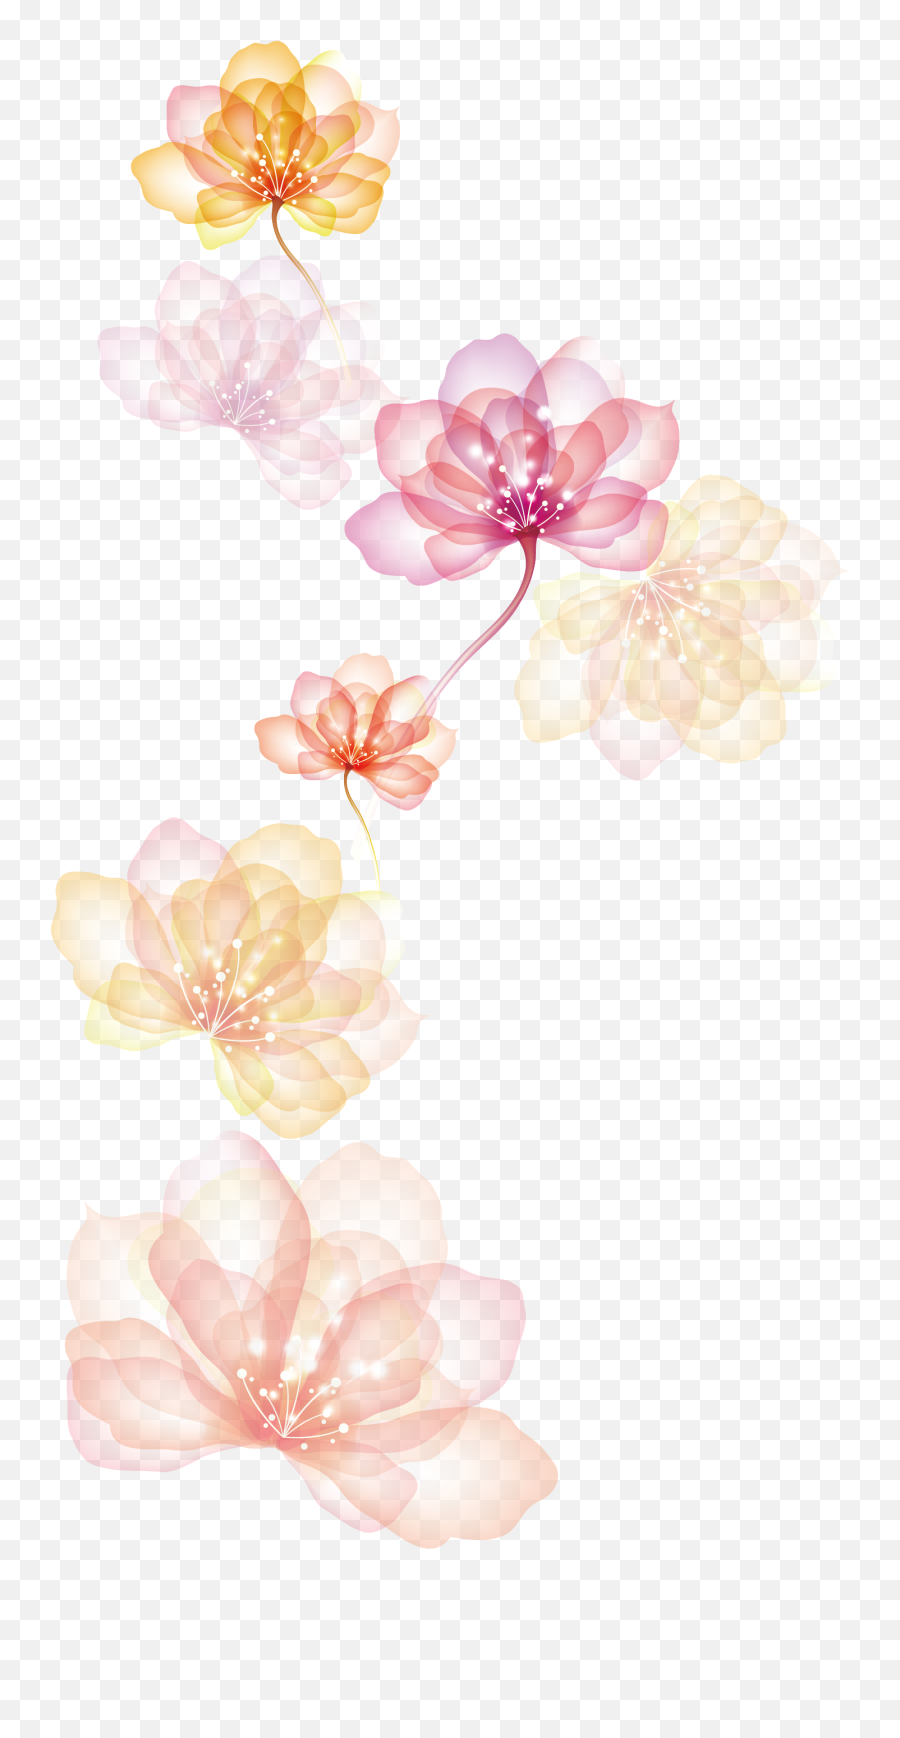 Download Petals Wedding Free Png Hq Clipart Png Free Emoji,Flower Petals Clipart